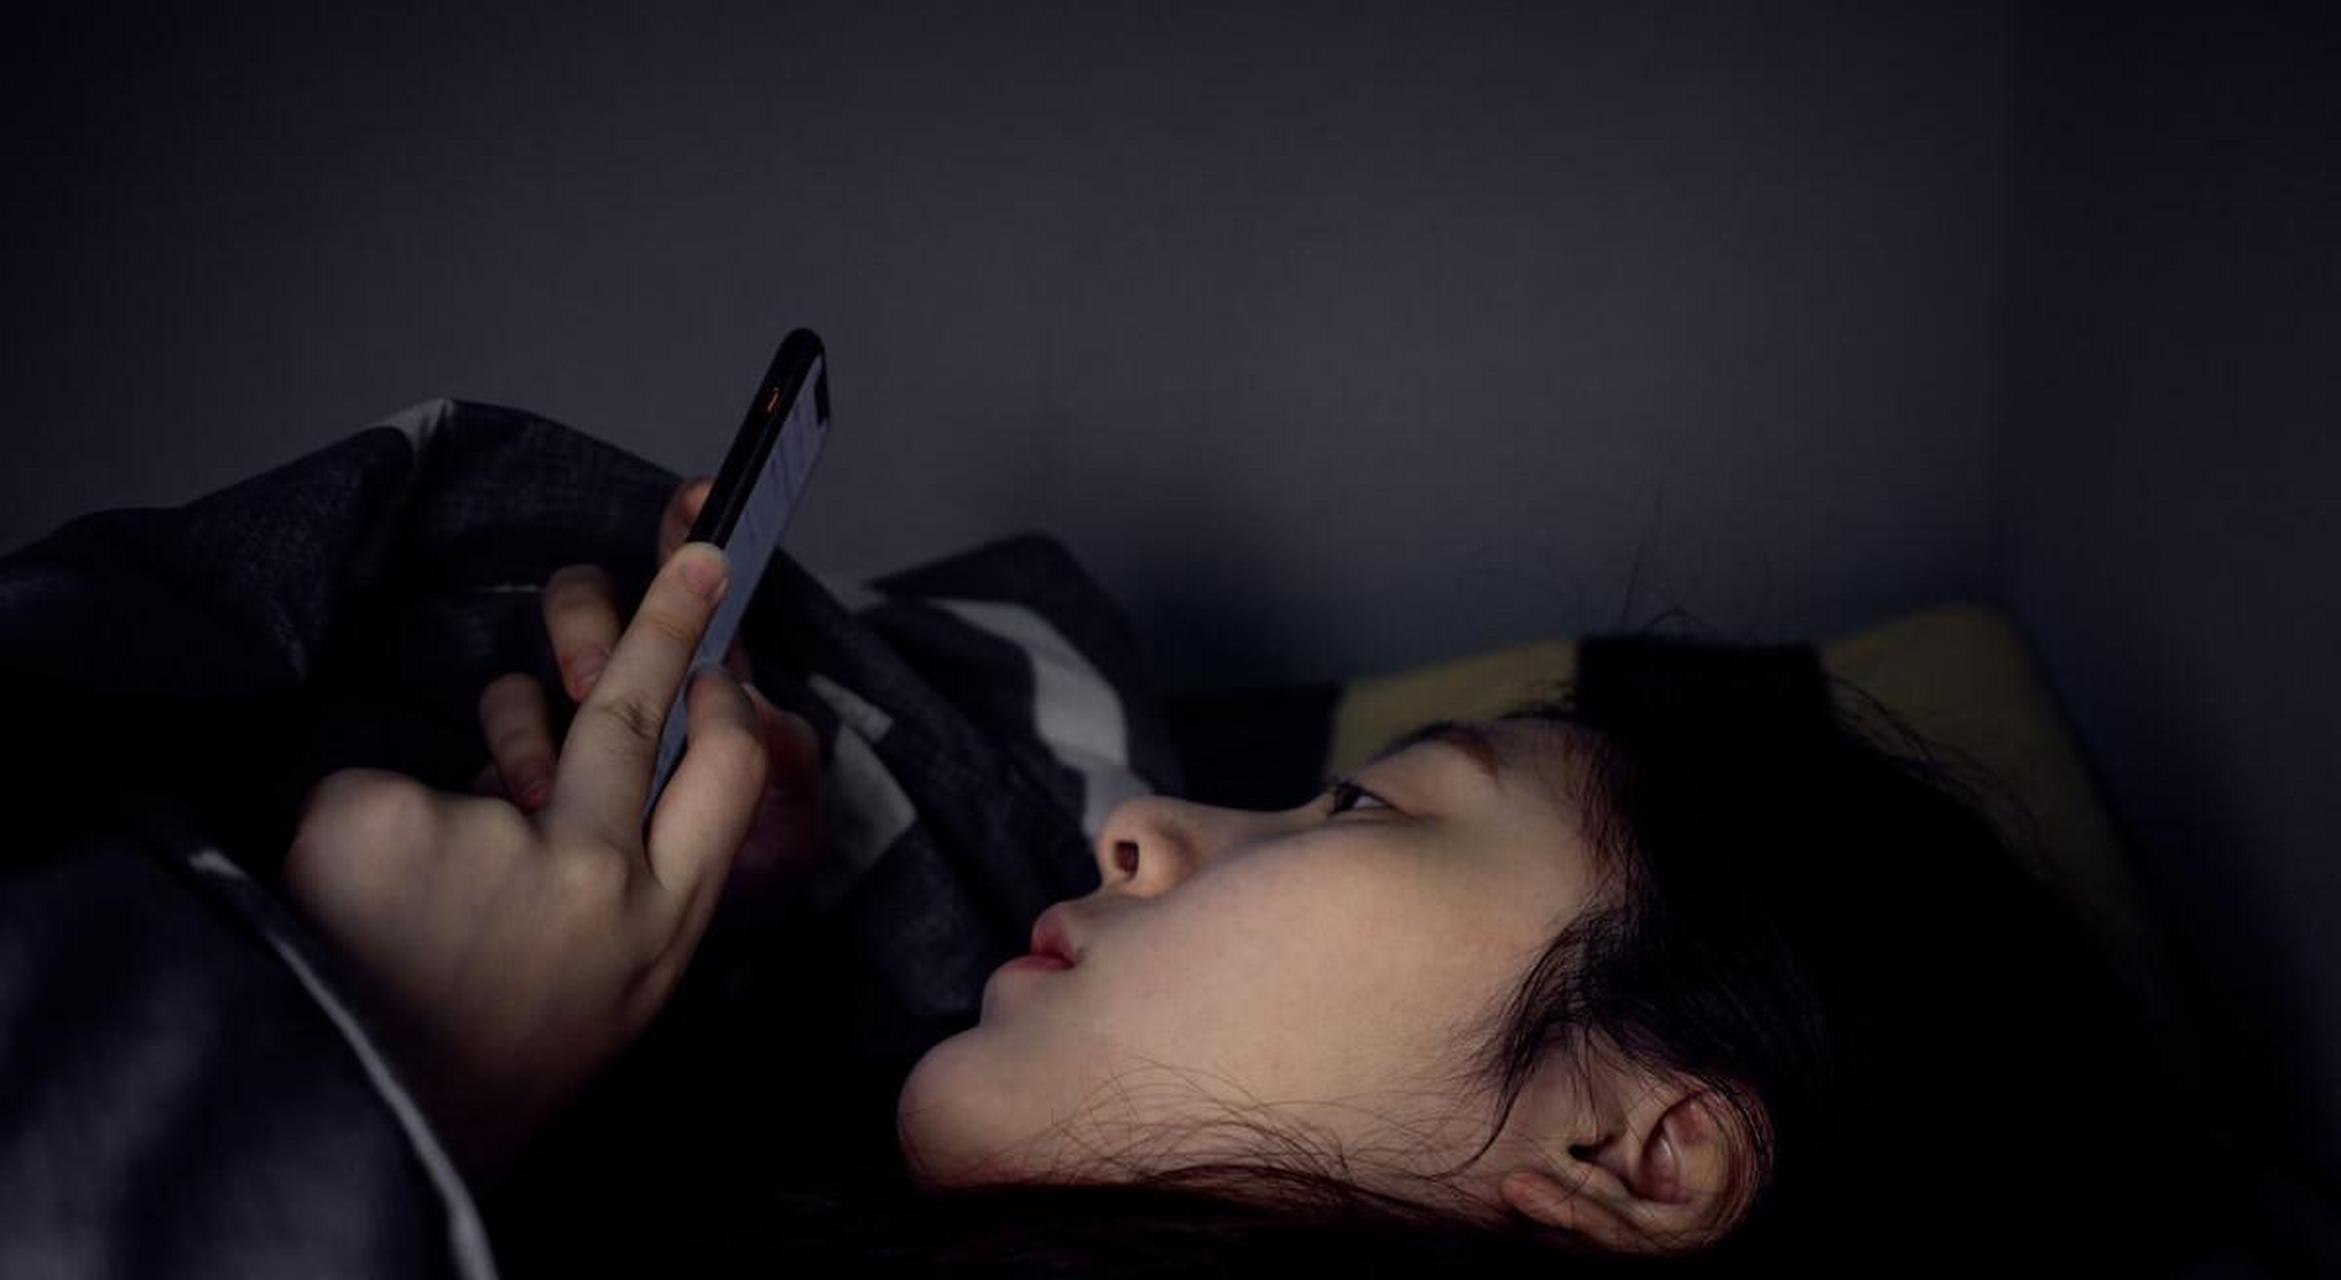 每天晚上睡觉前都要玩会手机,似乎不玩就睡不着觉